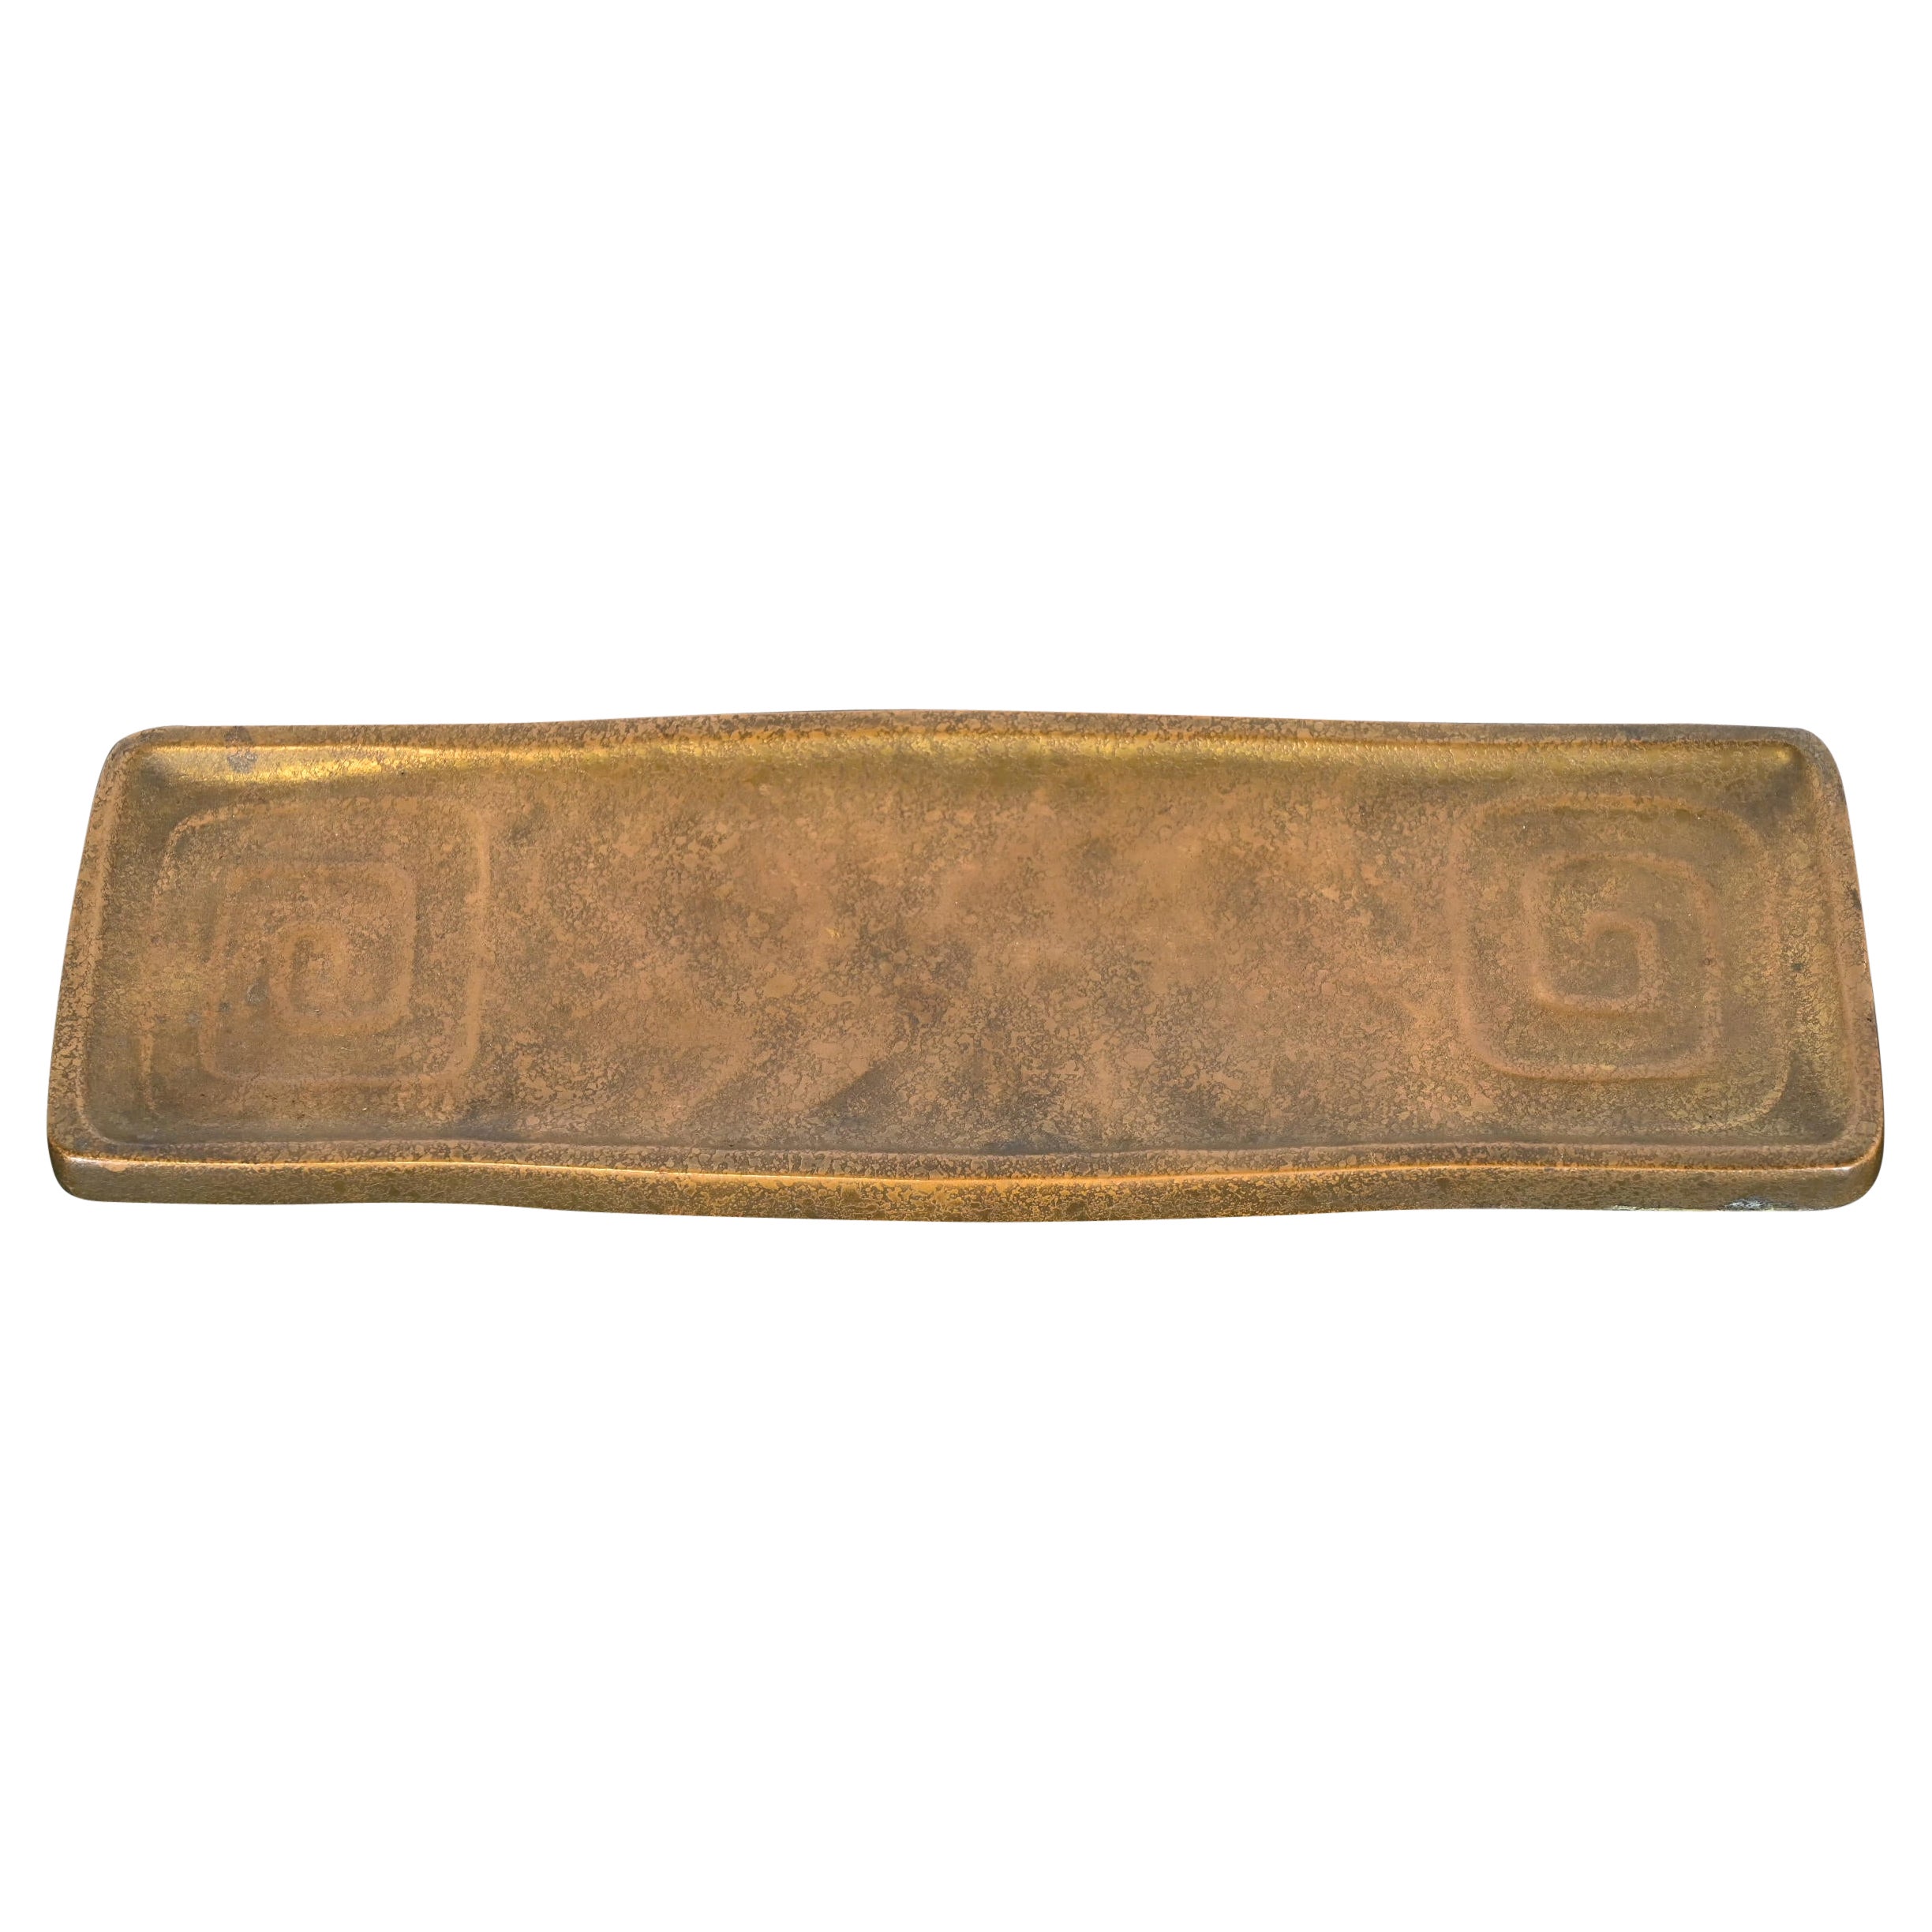 Tiffany Studios New York Art Deco Griechischer Schlüssel Bronze Doré Stift Tablett Schreibtisch Accessoire